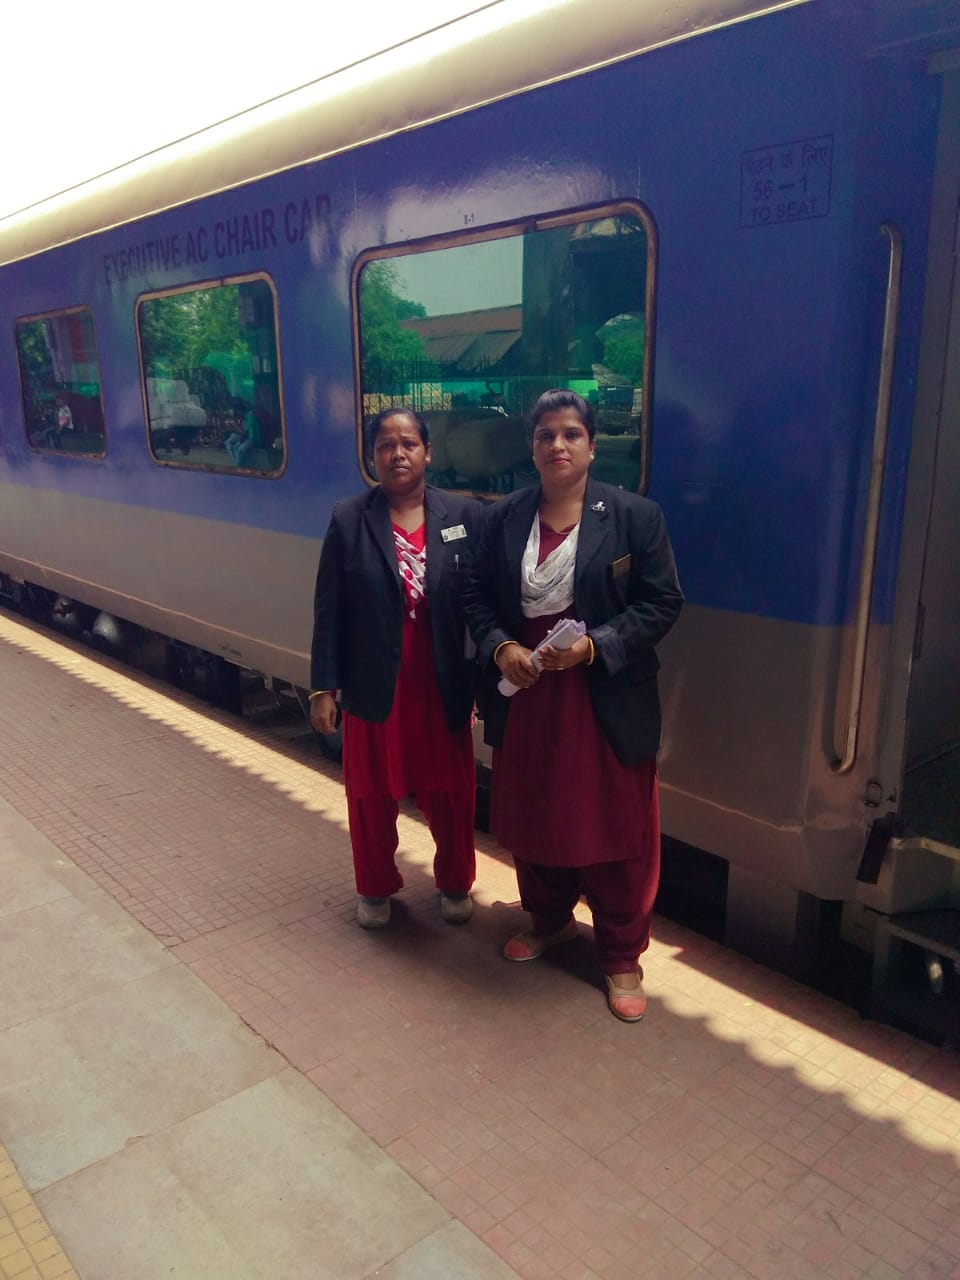 साउथ इर्स्टन रेलवे के पहले ट्रेन कैप्टन बने मिहिर, हावडा-यशवंतपुर दुरंताे में तैनाती